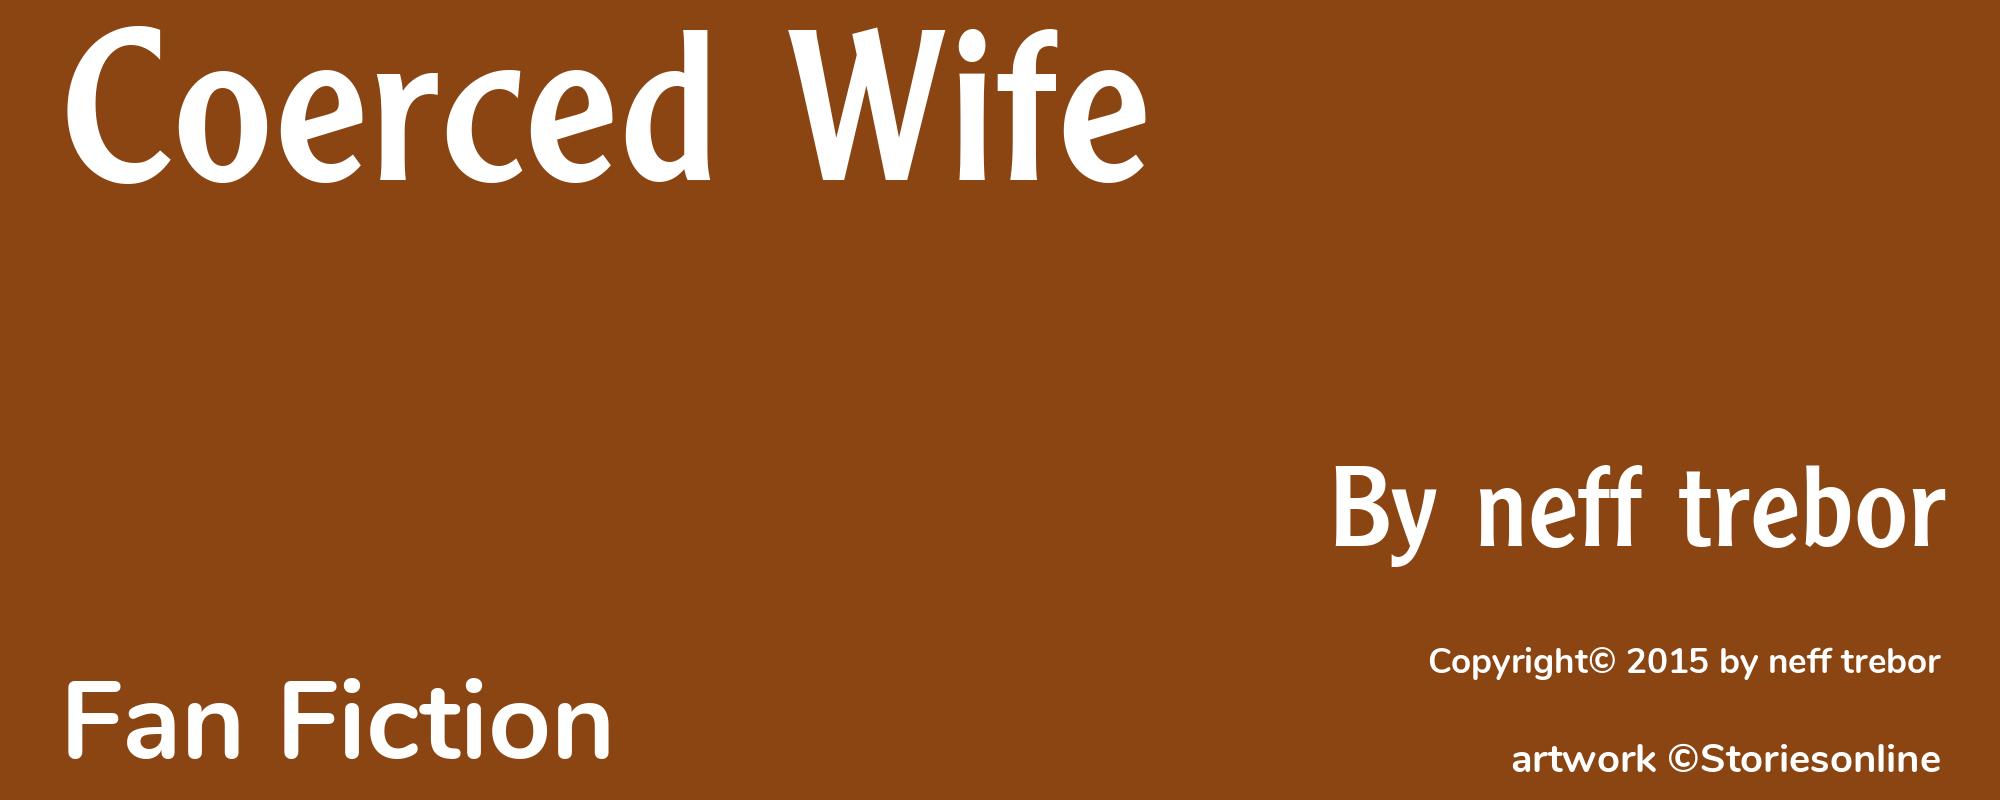 Coerced Wife - Cover